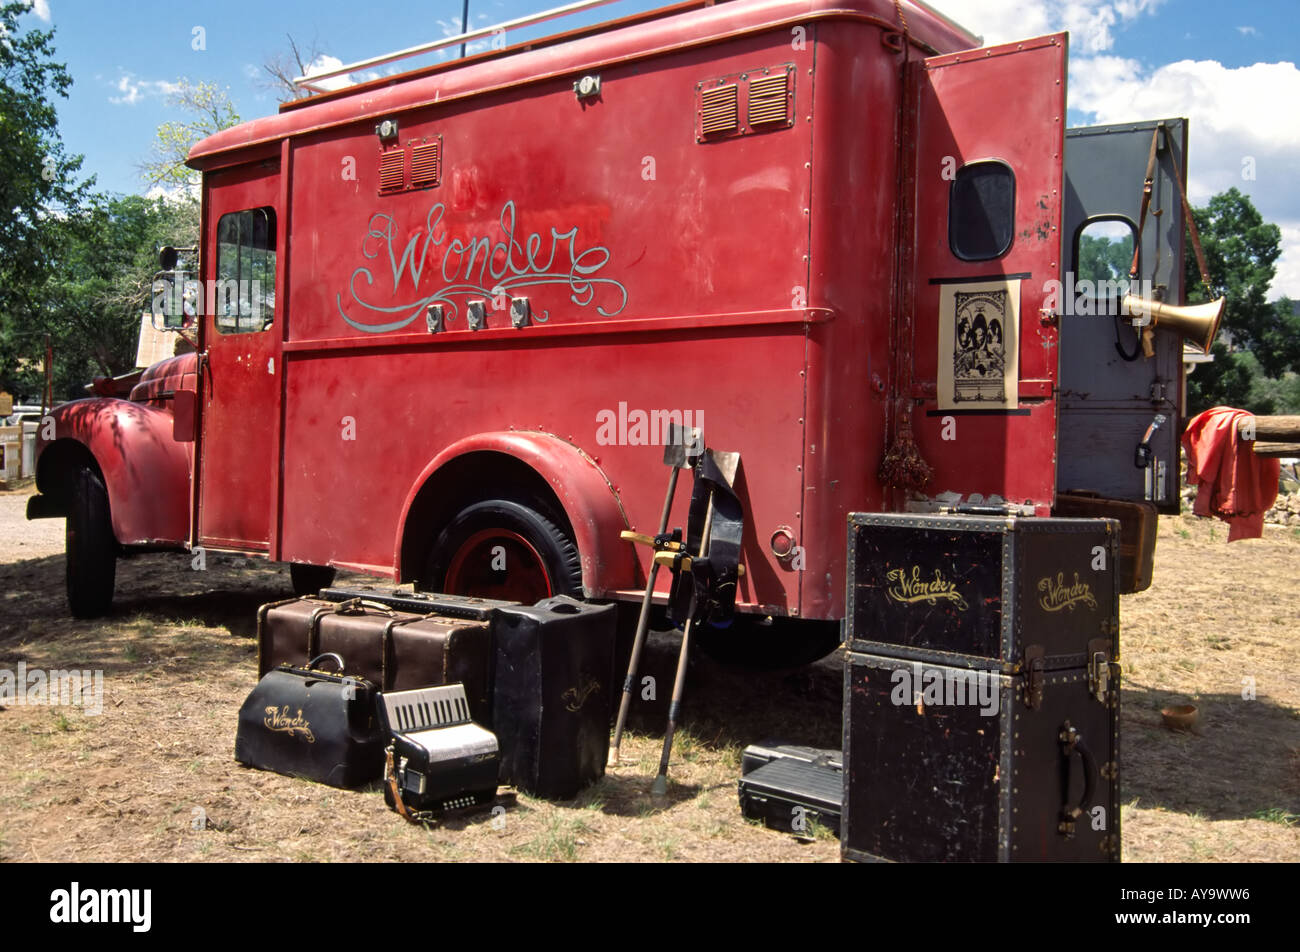 Señor 0378 El antiguo clásico camión rojo de la maravilla de viajar show de magia viene a Lincoln, Nuevo México. Foto de stock